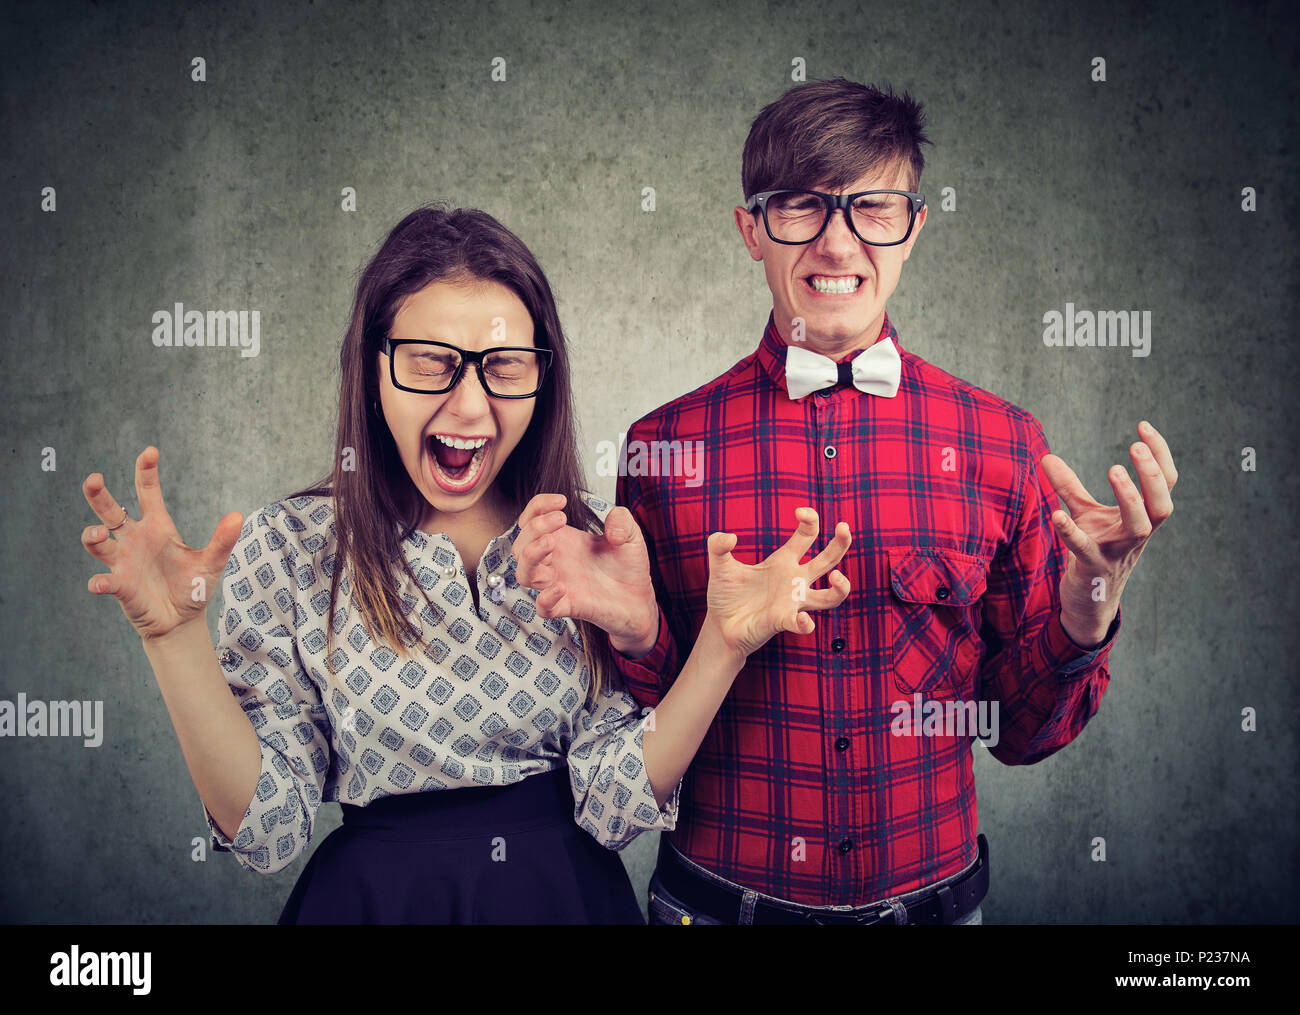 Souligné desperate angry couple hurlant debout près de l'autre sur grunge wall background Banque D'Images